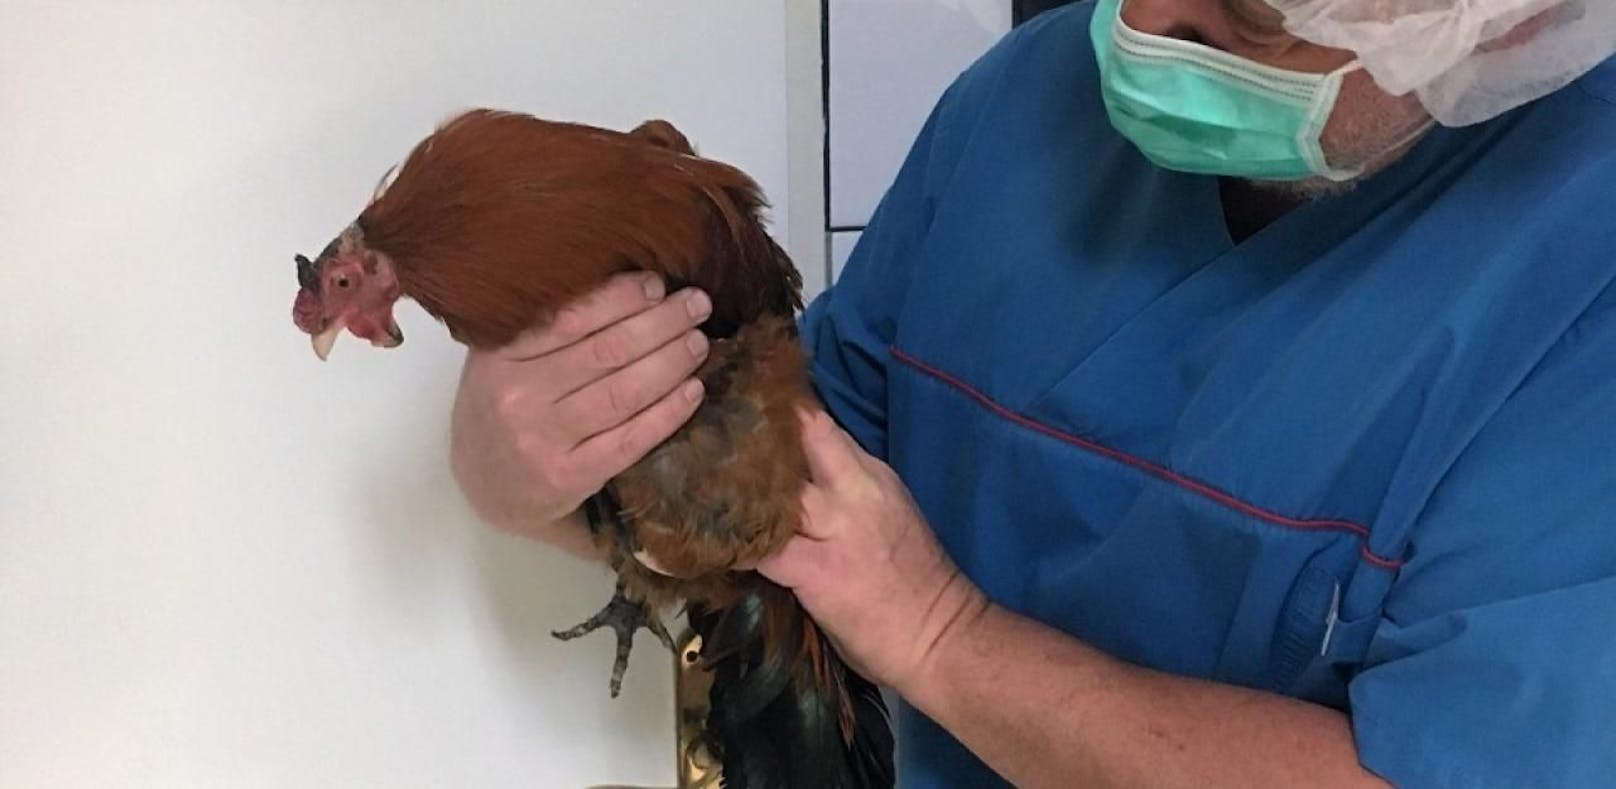 Tierquälerei: Hahn wurden beide Beine abgetrennt